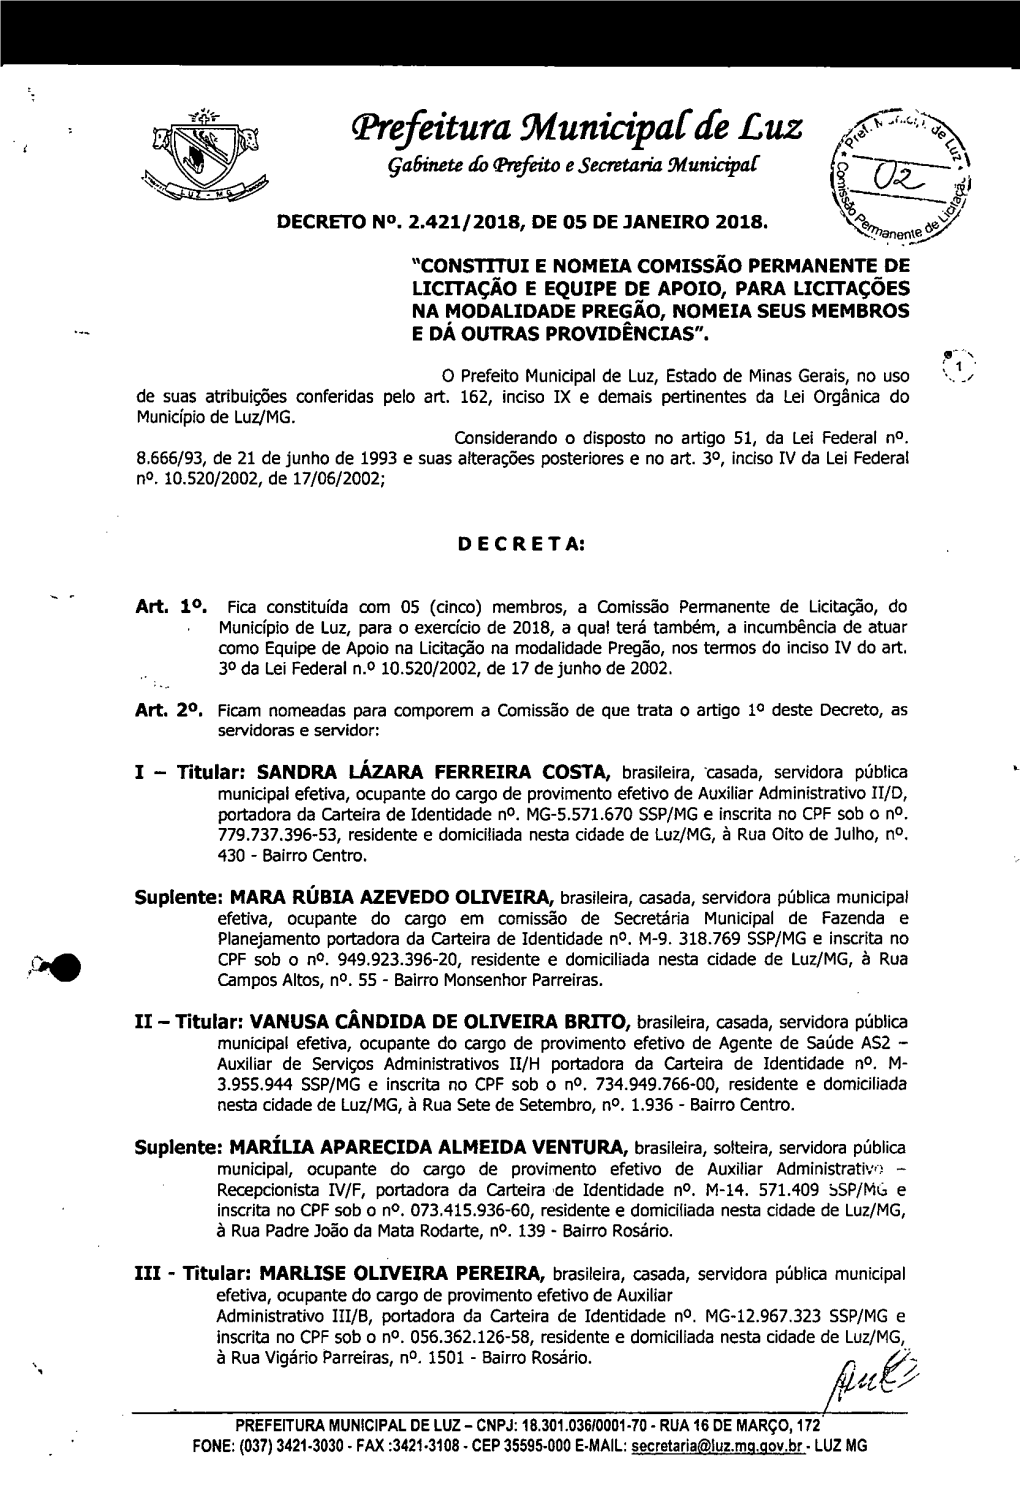 Prefeitura Municipal De Luz (\N..Fr� ( 4.‘ Gabinete Do Trrfeito E Secretaria 31Unicipal"